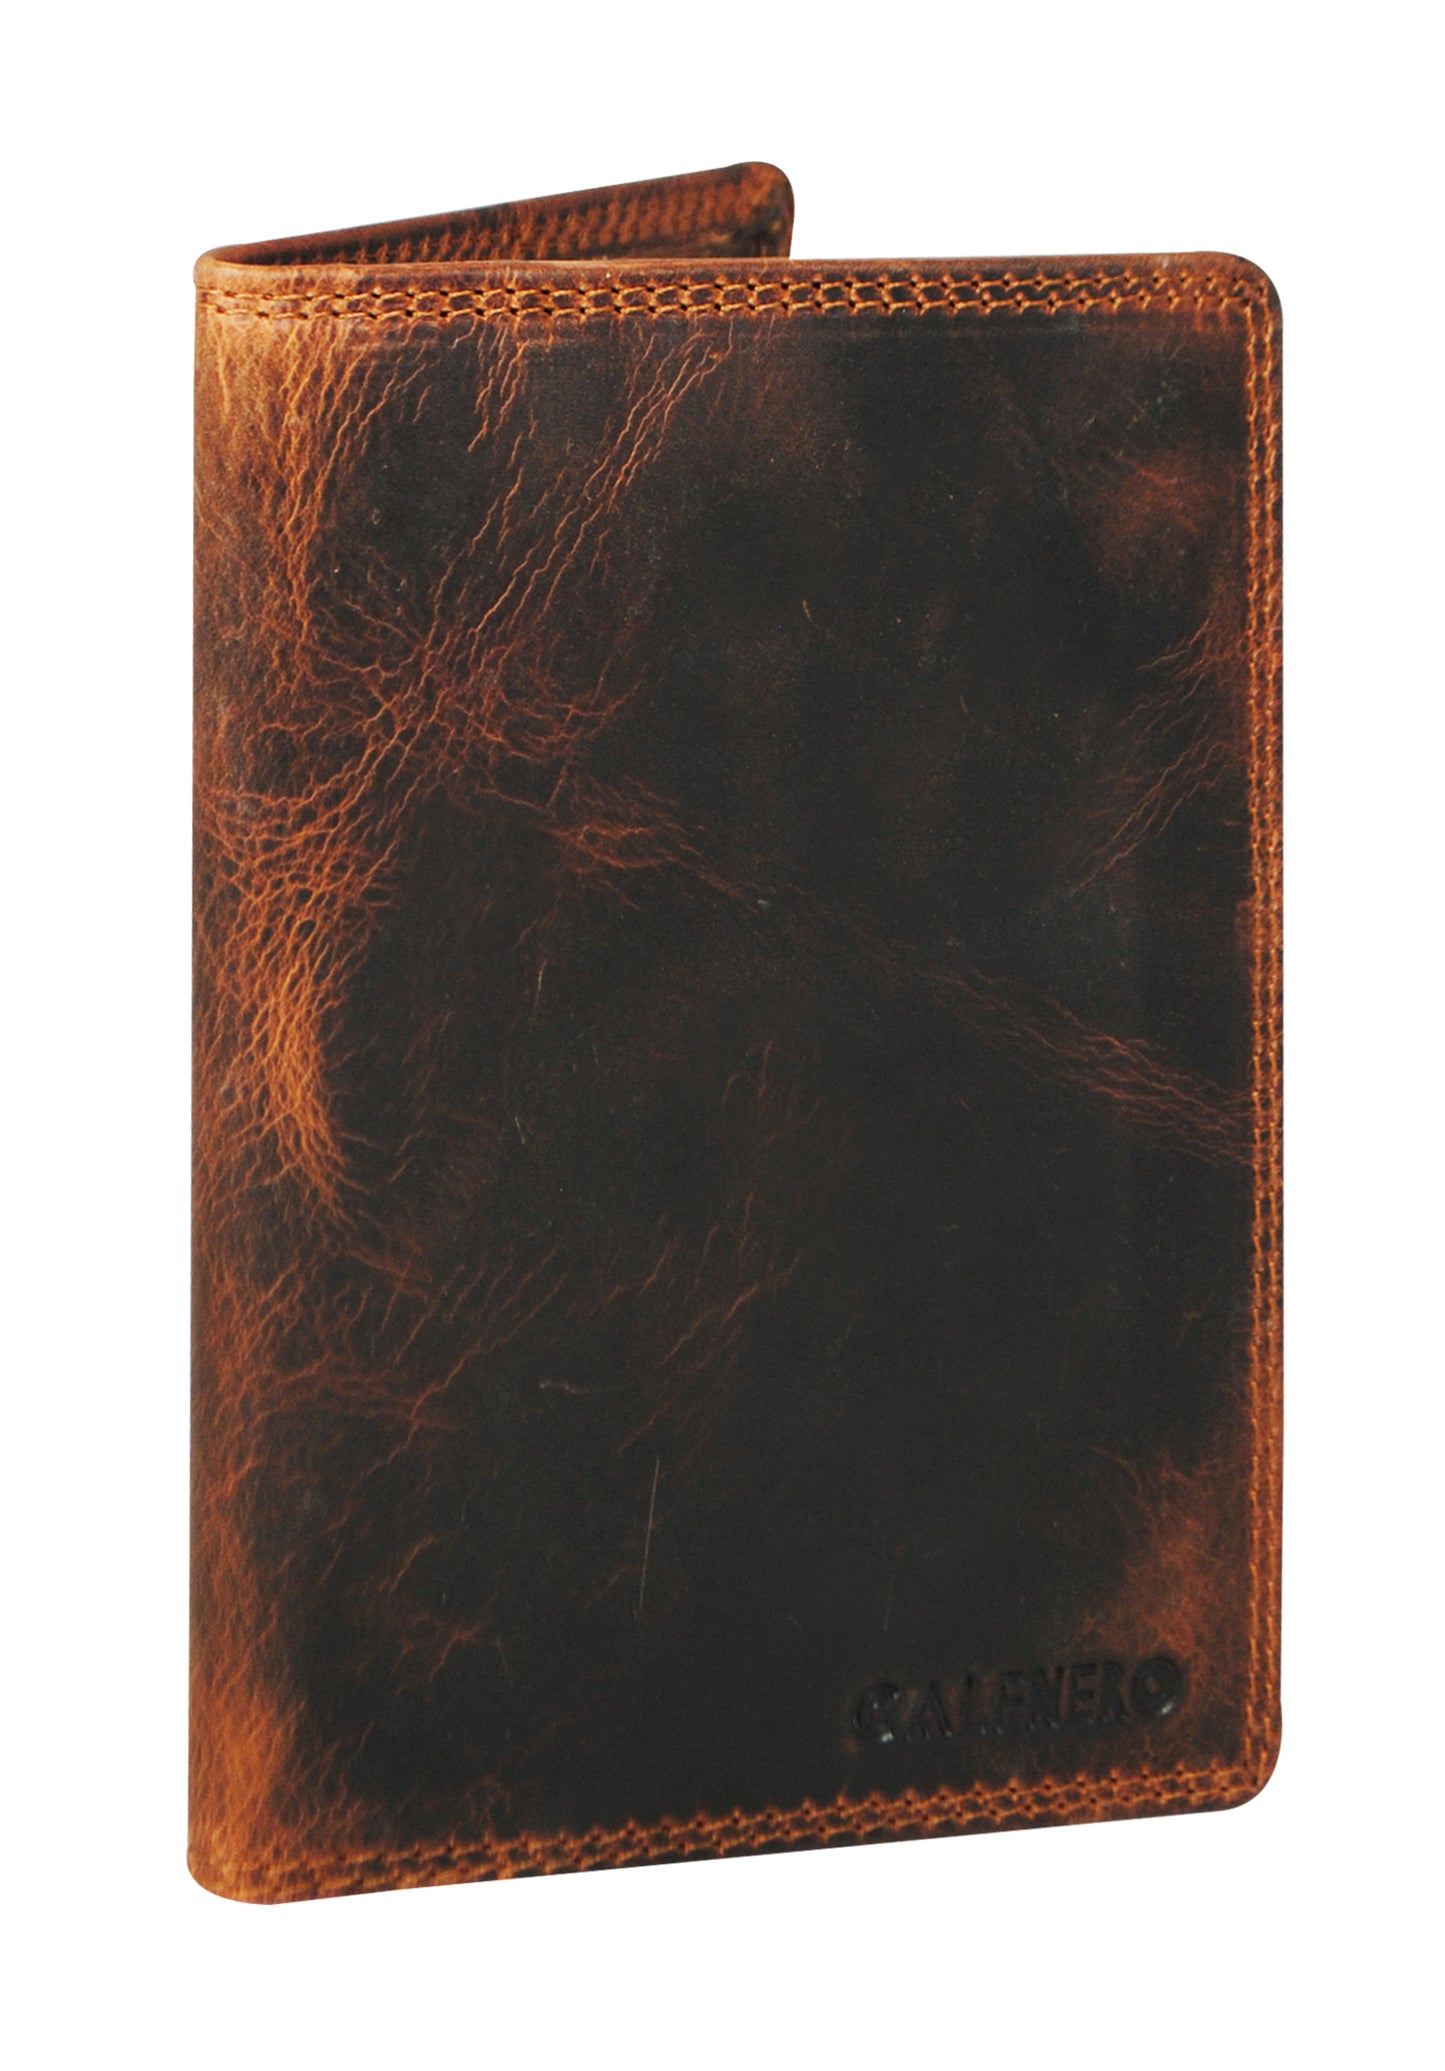 Calfnero Genuine Leather Passport Wallet-Passport Holder (5232-Kara)